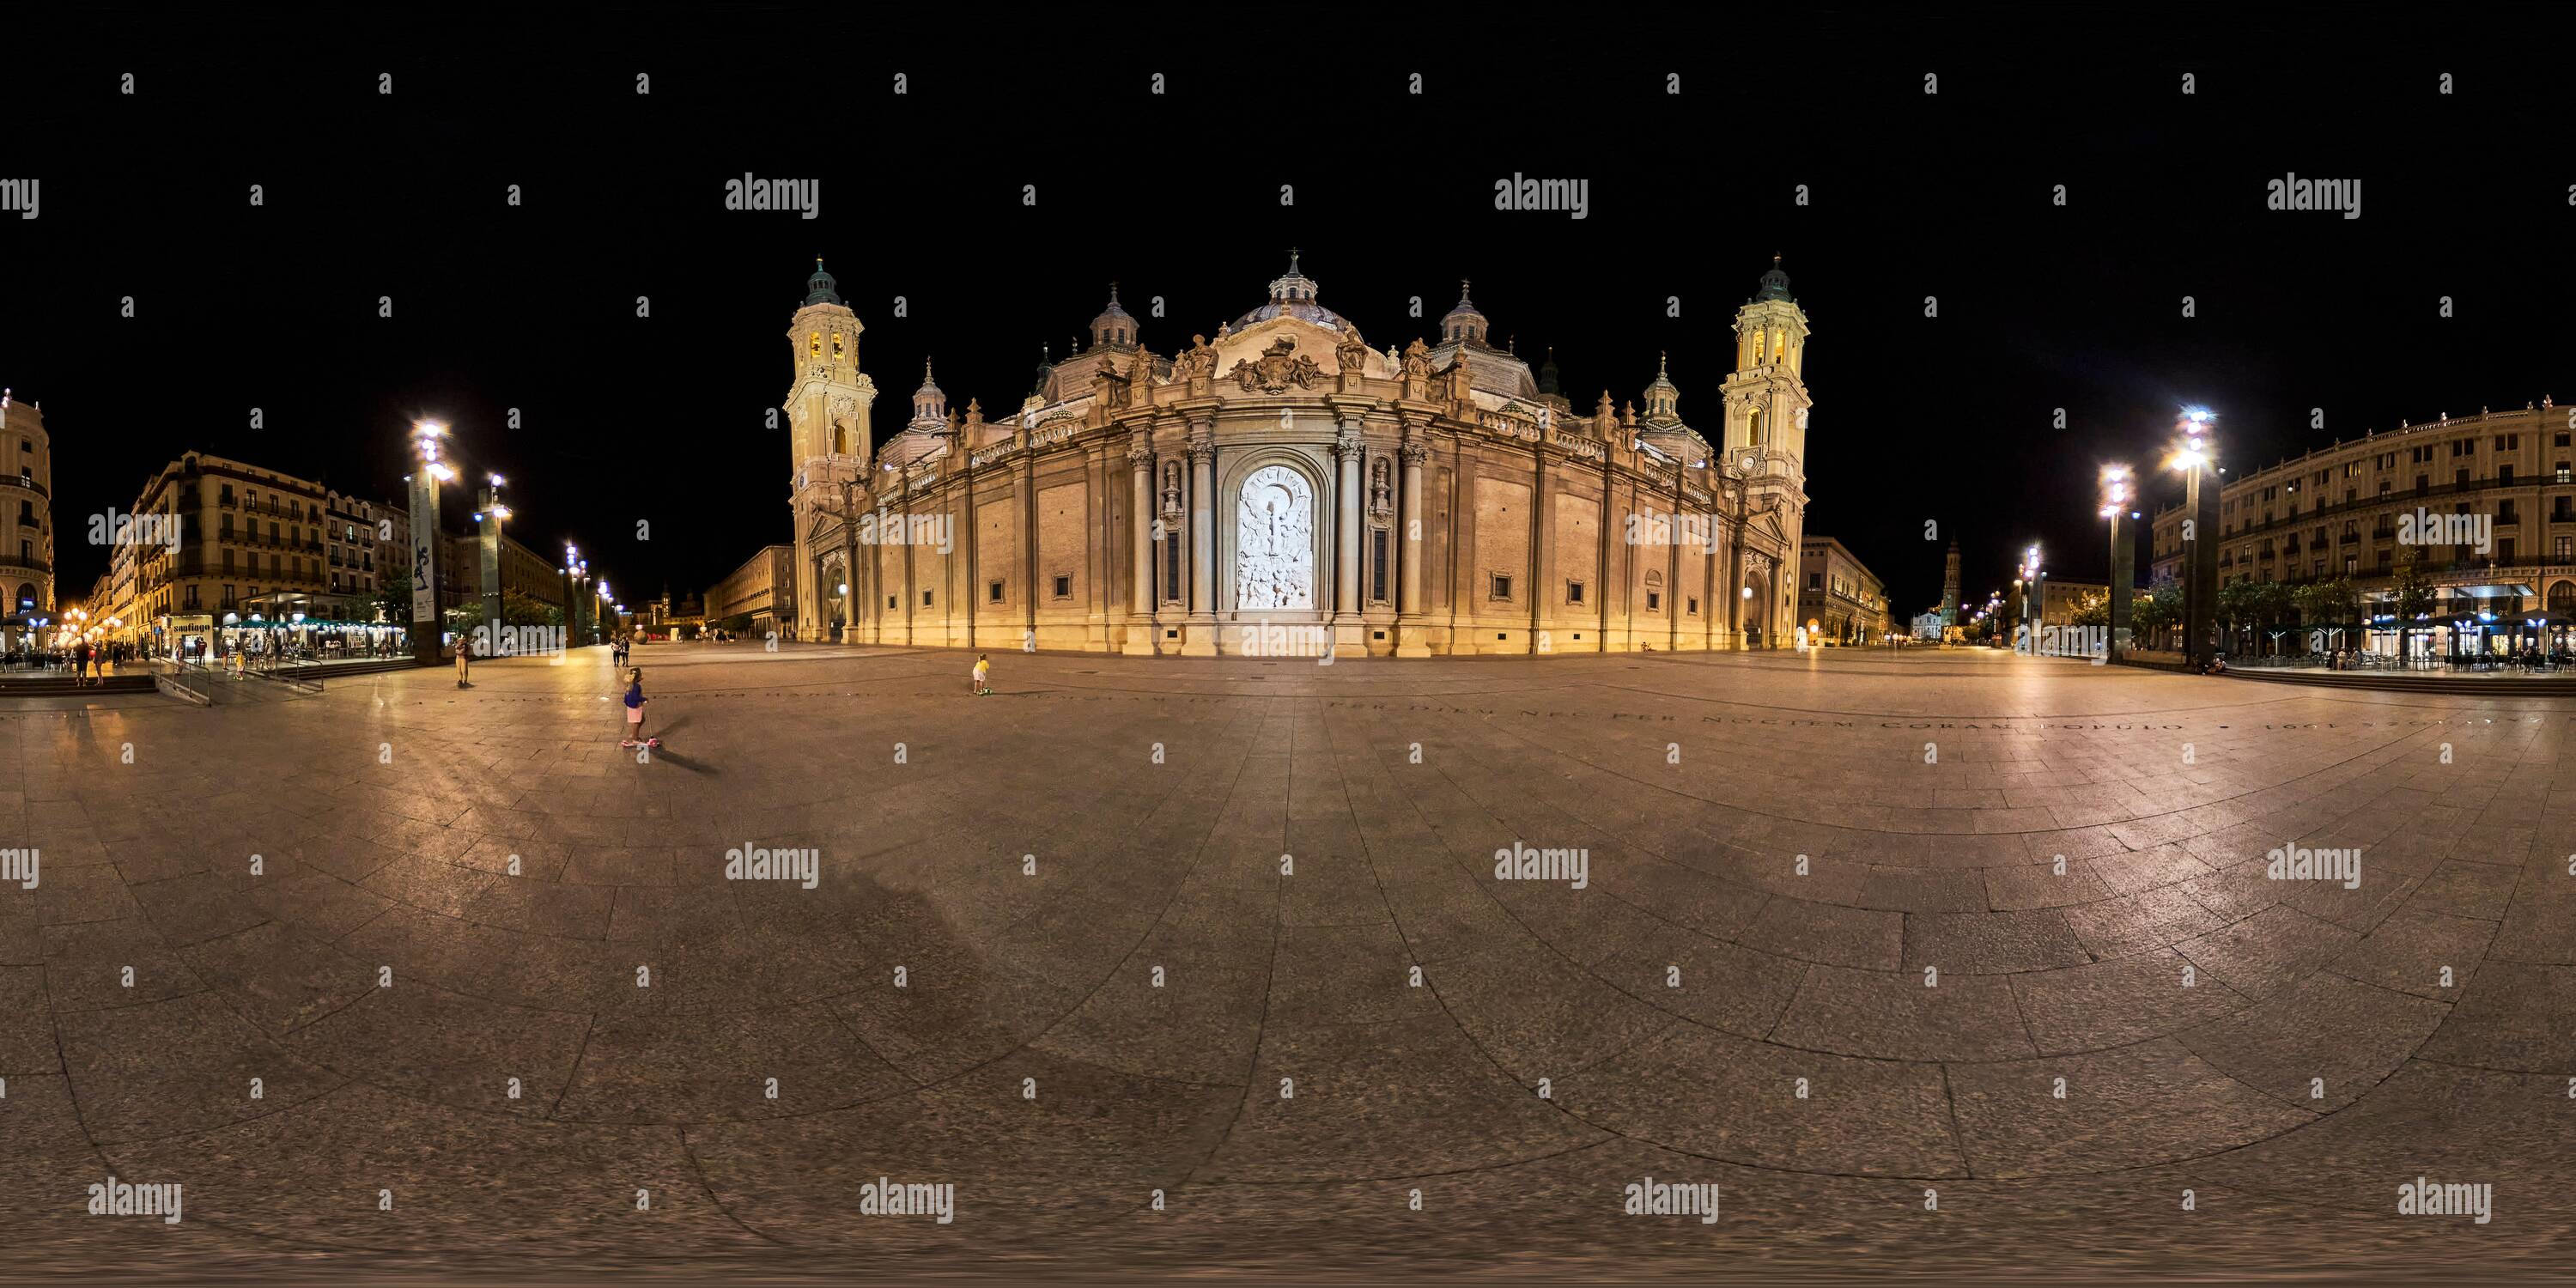 Vue panoramique à 360° de 360 degrés panoramique: Cathédrale-basilique de Nuestra Señora del Pilar de Zaragoza, temple baroque, Aragon, Espagne, Europe